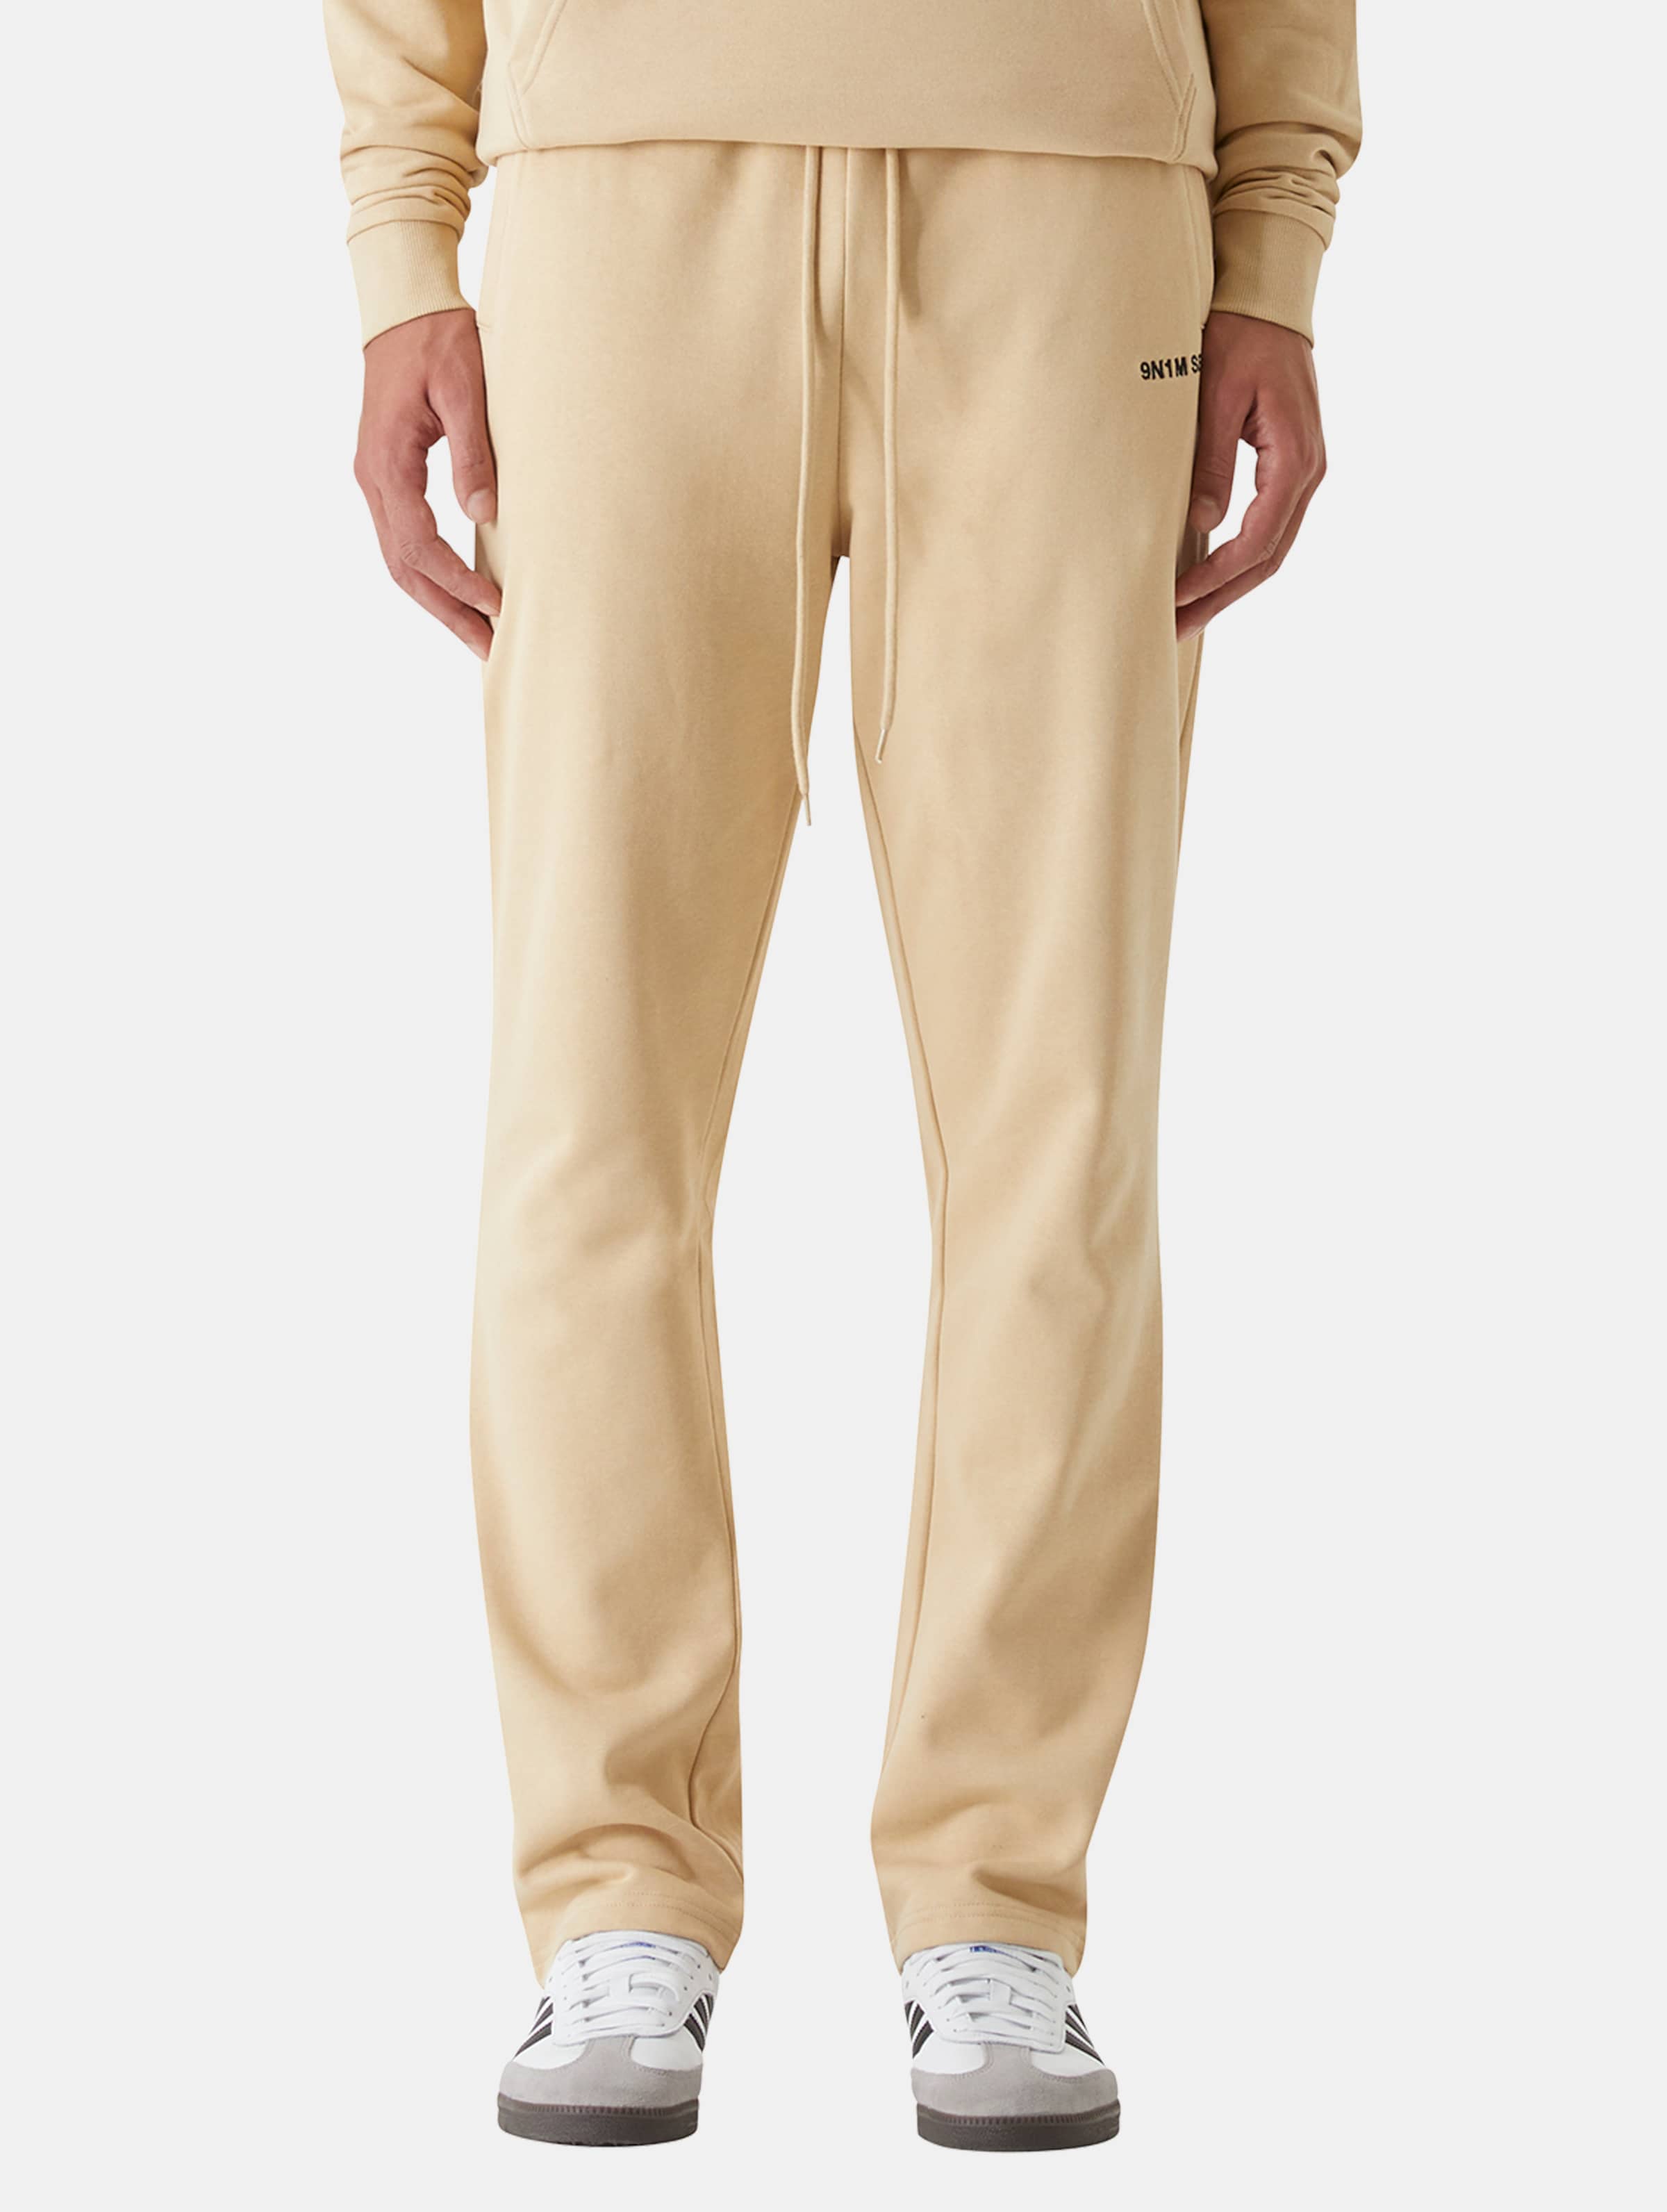 9N1M SENSE Essential Straight Jogginghosen Männer,Unisex op kleur beige, Maat S